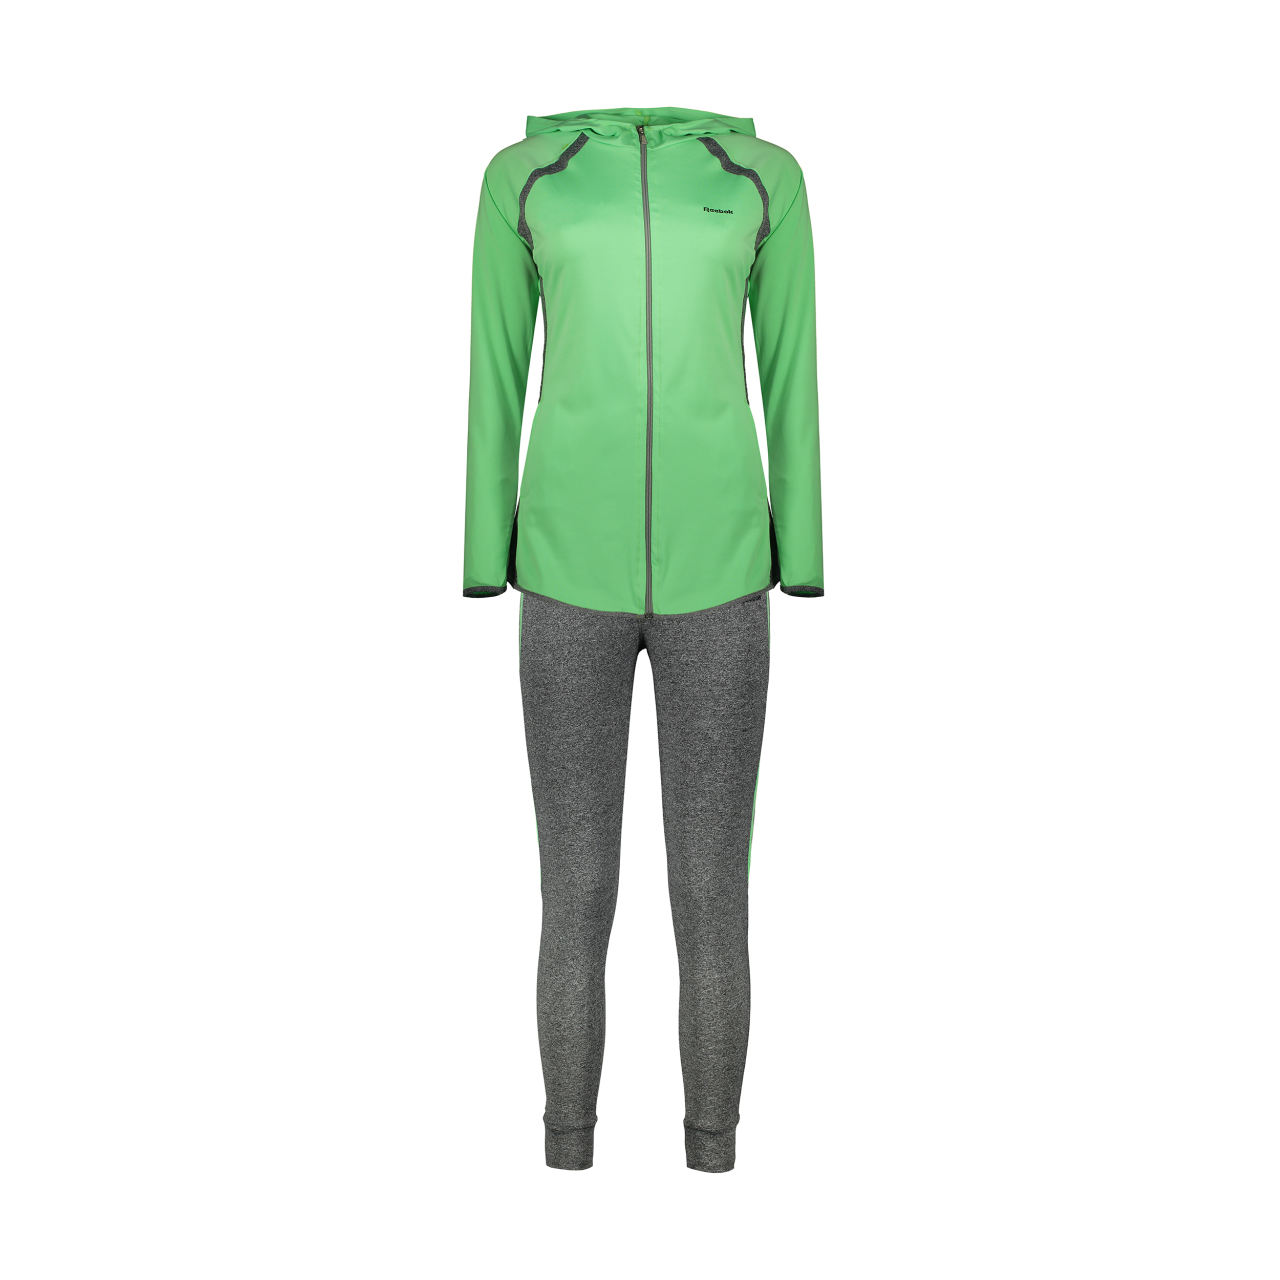 ست گرمکن و شلوار زنانه -لباس زنانه ست سویشرت و شلوار ورزشی زنانه کد Mhr-1018 - سبز خاکستری